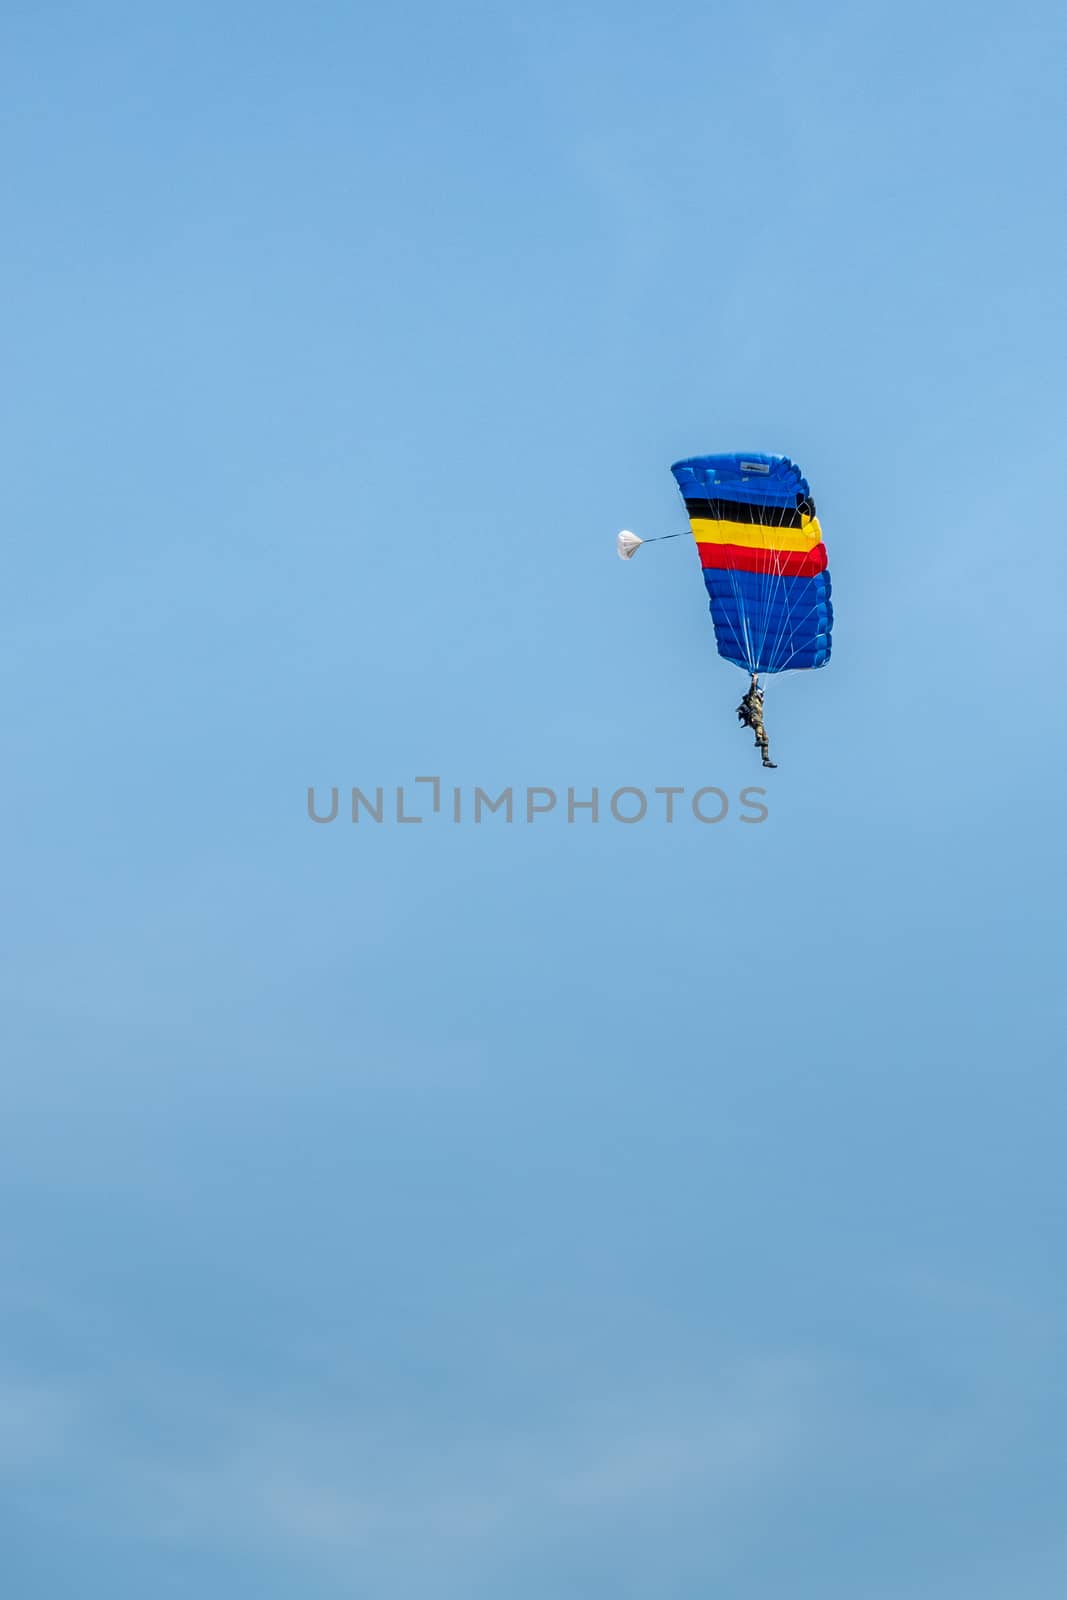 Han-sur-Lesse, Belgium - June 25, 2019: Belgian soldier on parachute with Belgian flag colors against blue sky.